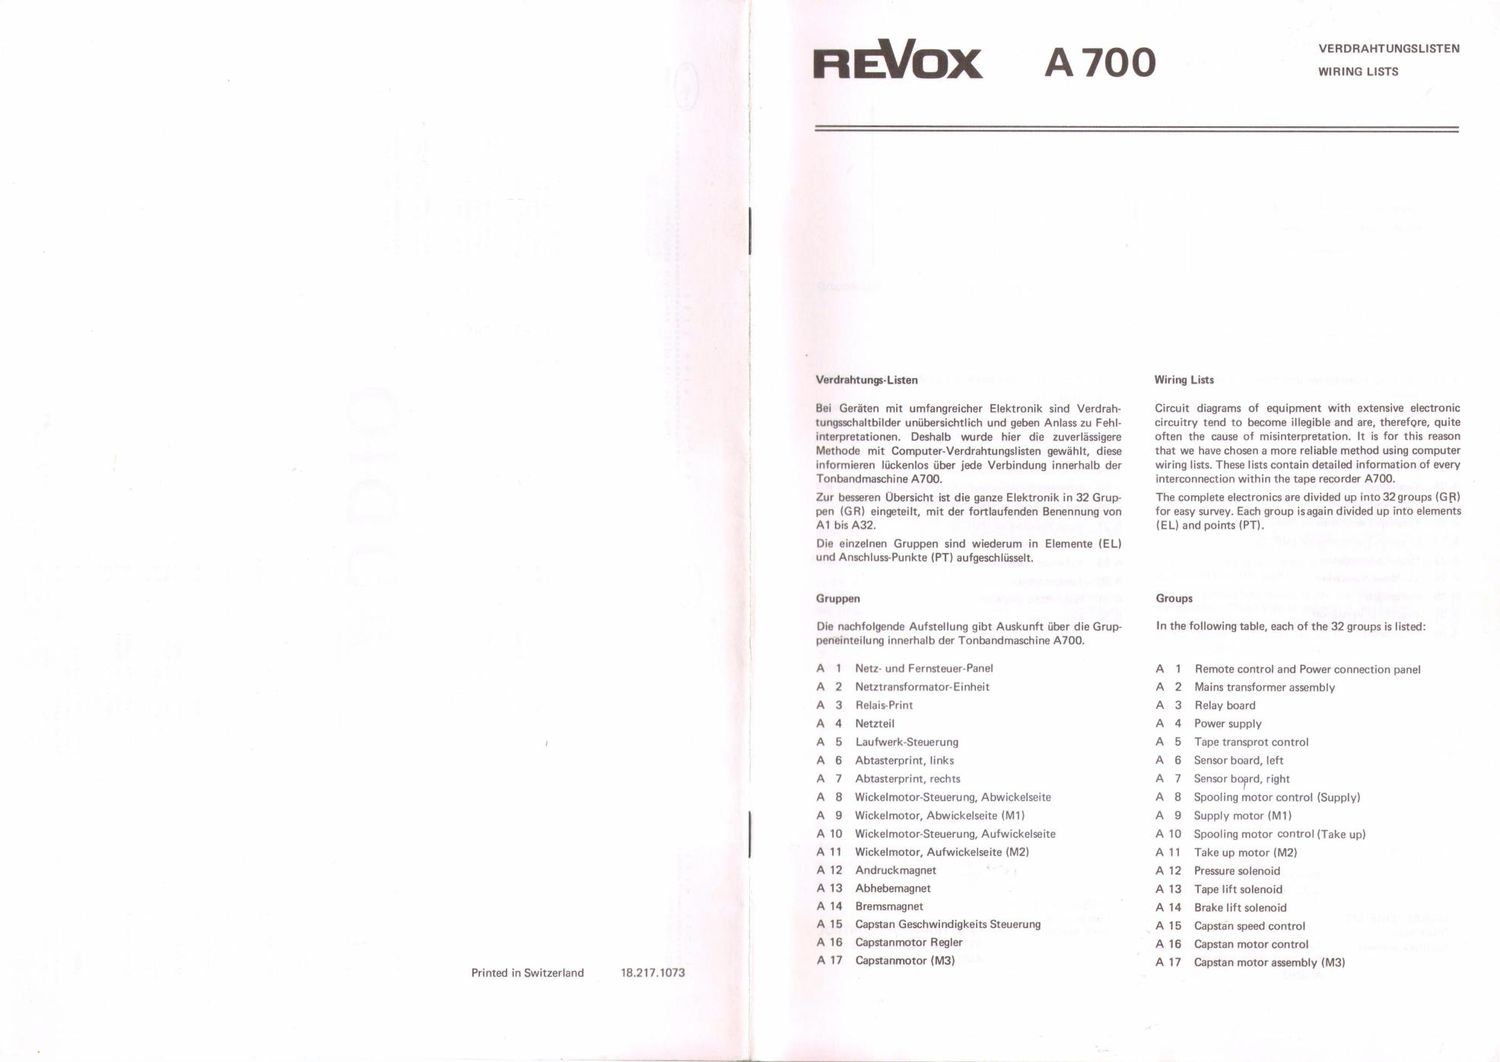 revox A700 verdrahtungslisten